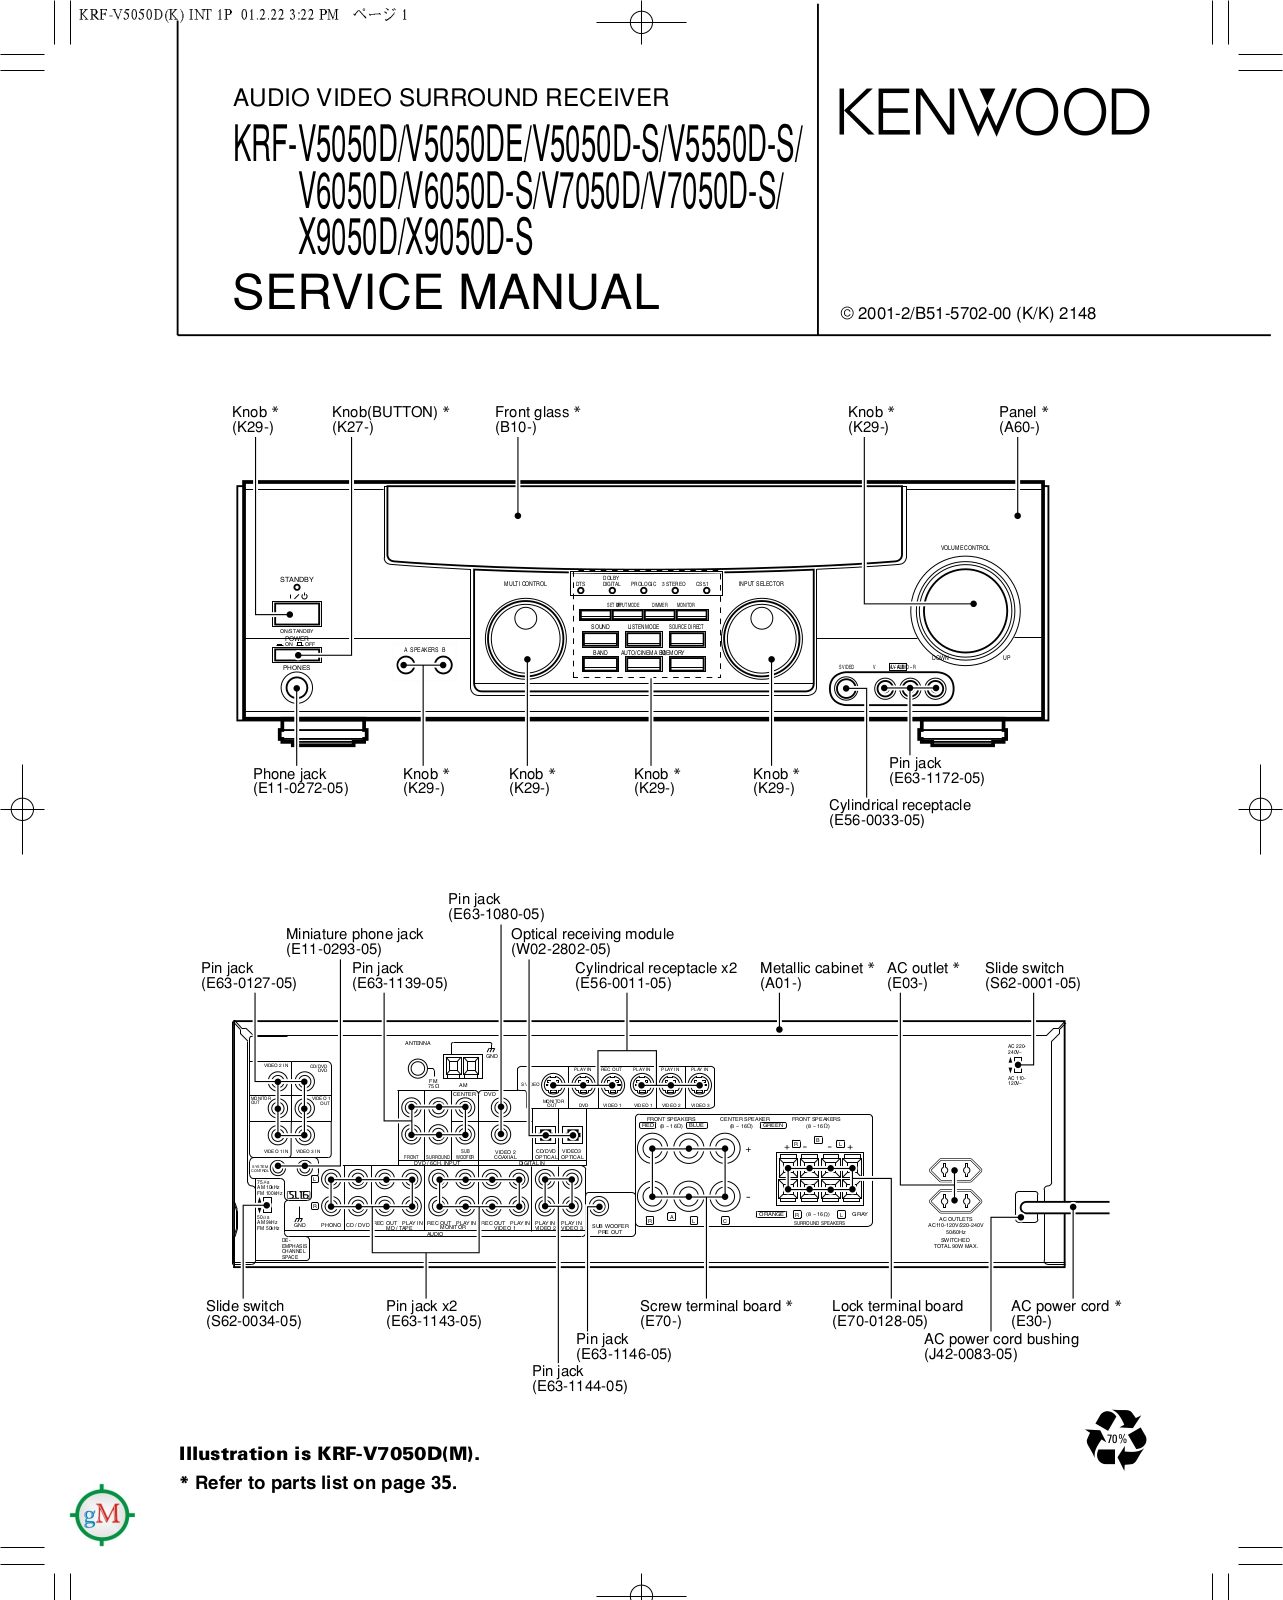 Kenwood KRFV-5050, KRFV-5550, KRFV-6050, KRFV-7050, KRFX-9050 Service manual